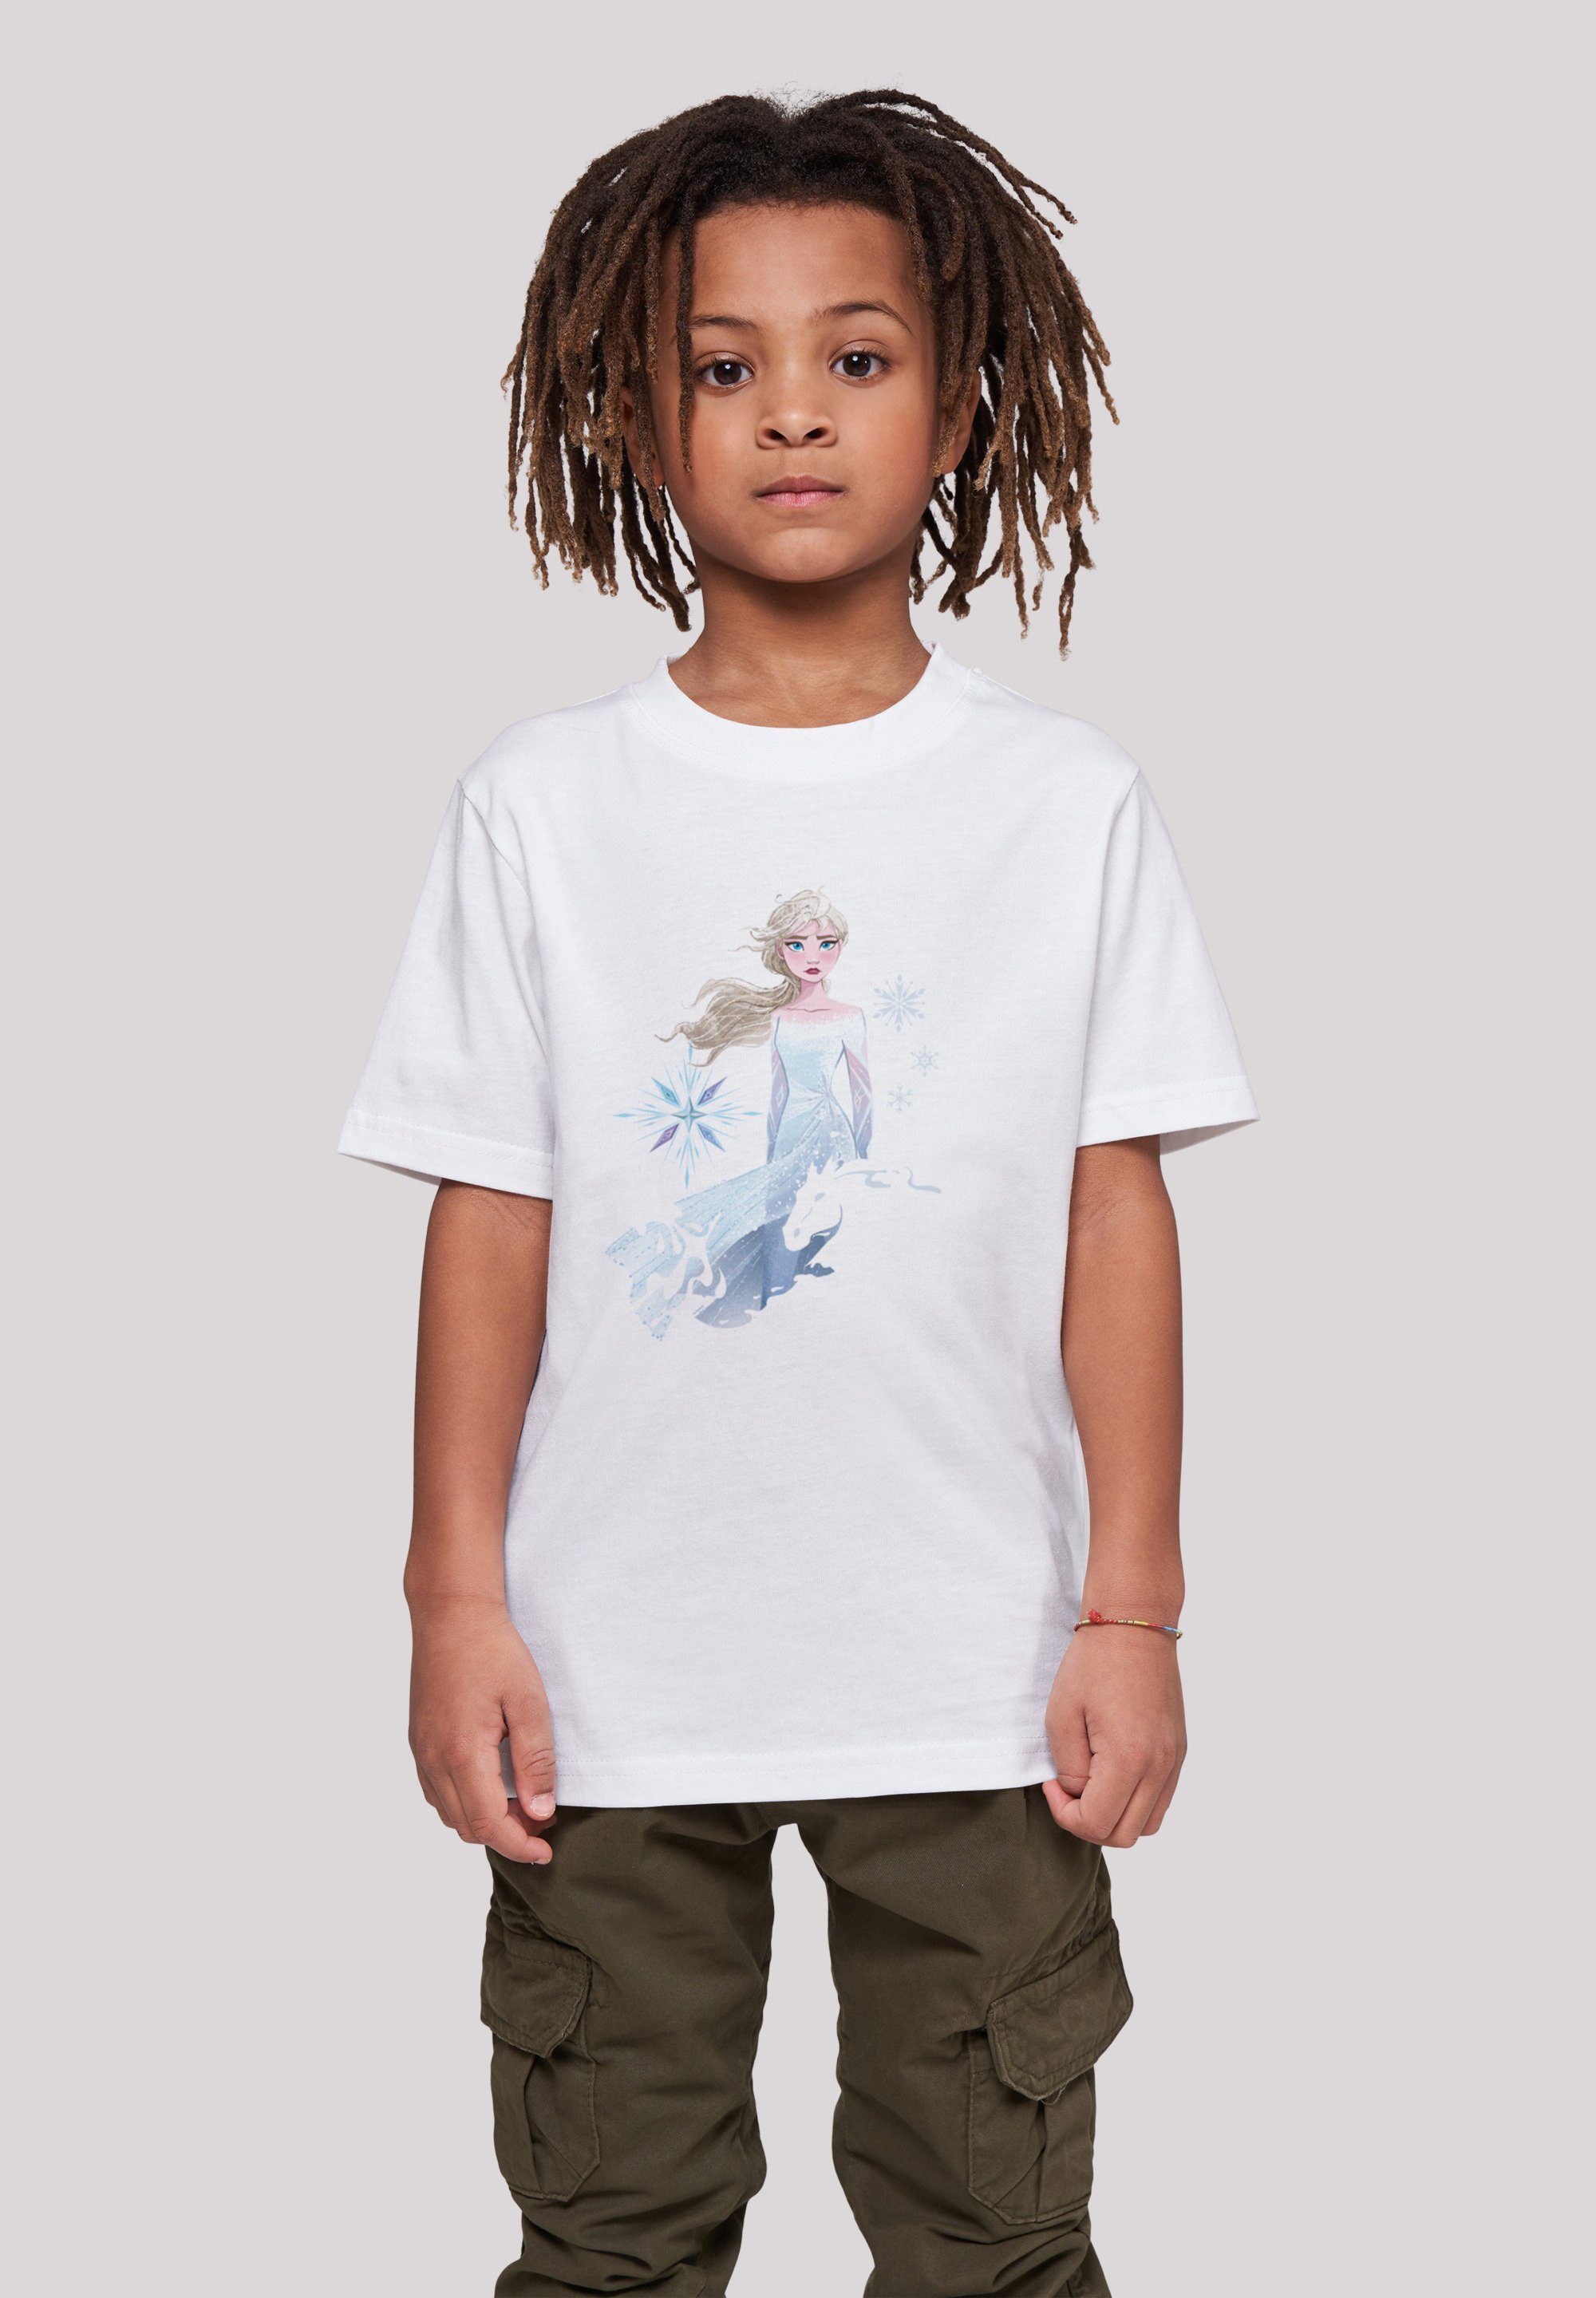 F4NT4STIC T-Shirt Disney Unisex Wassergeist Elsa 2 Kinder,Premium Silhouette Pferd weiß Merch,Jungen,Mädchen,Bedruckt Frozen Nokk